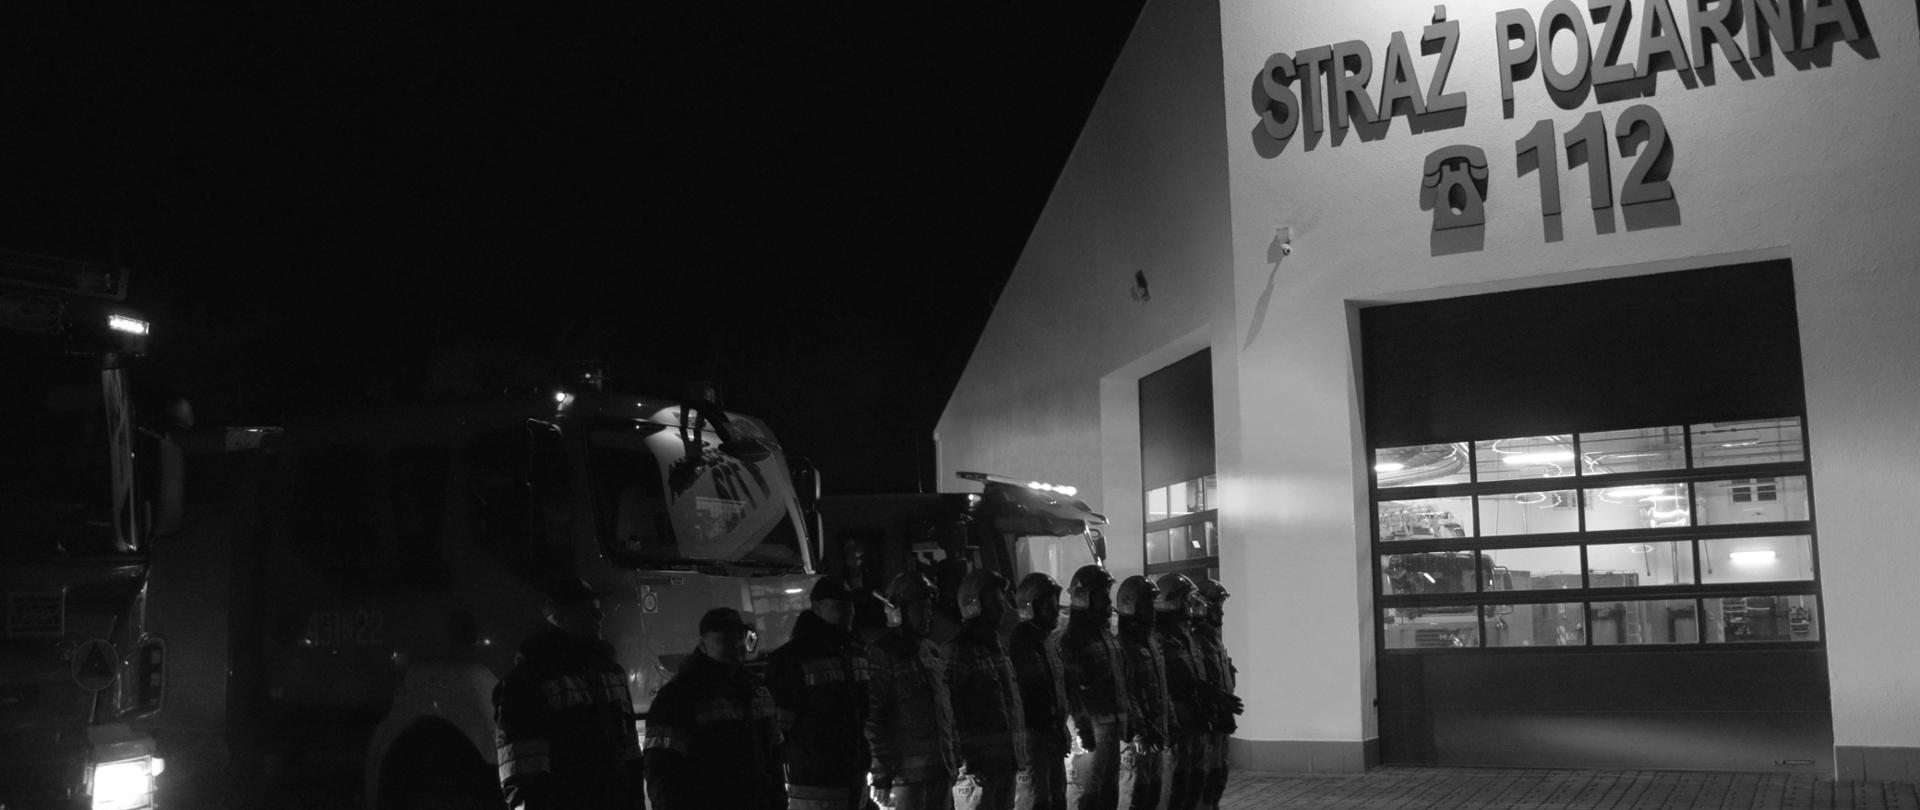 Strażacy ustawieni w szeregu stoją przed budynkiem Komendy Powiatowej PSP w Golubiu-Dobrzyniu. Za nimi widać wozy bojowe.